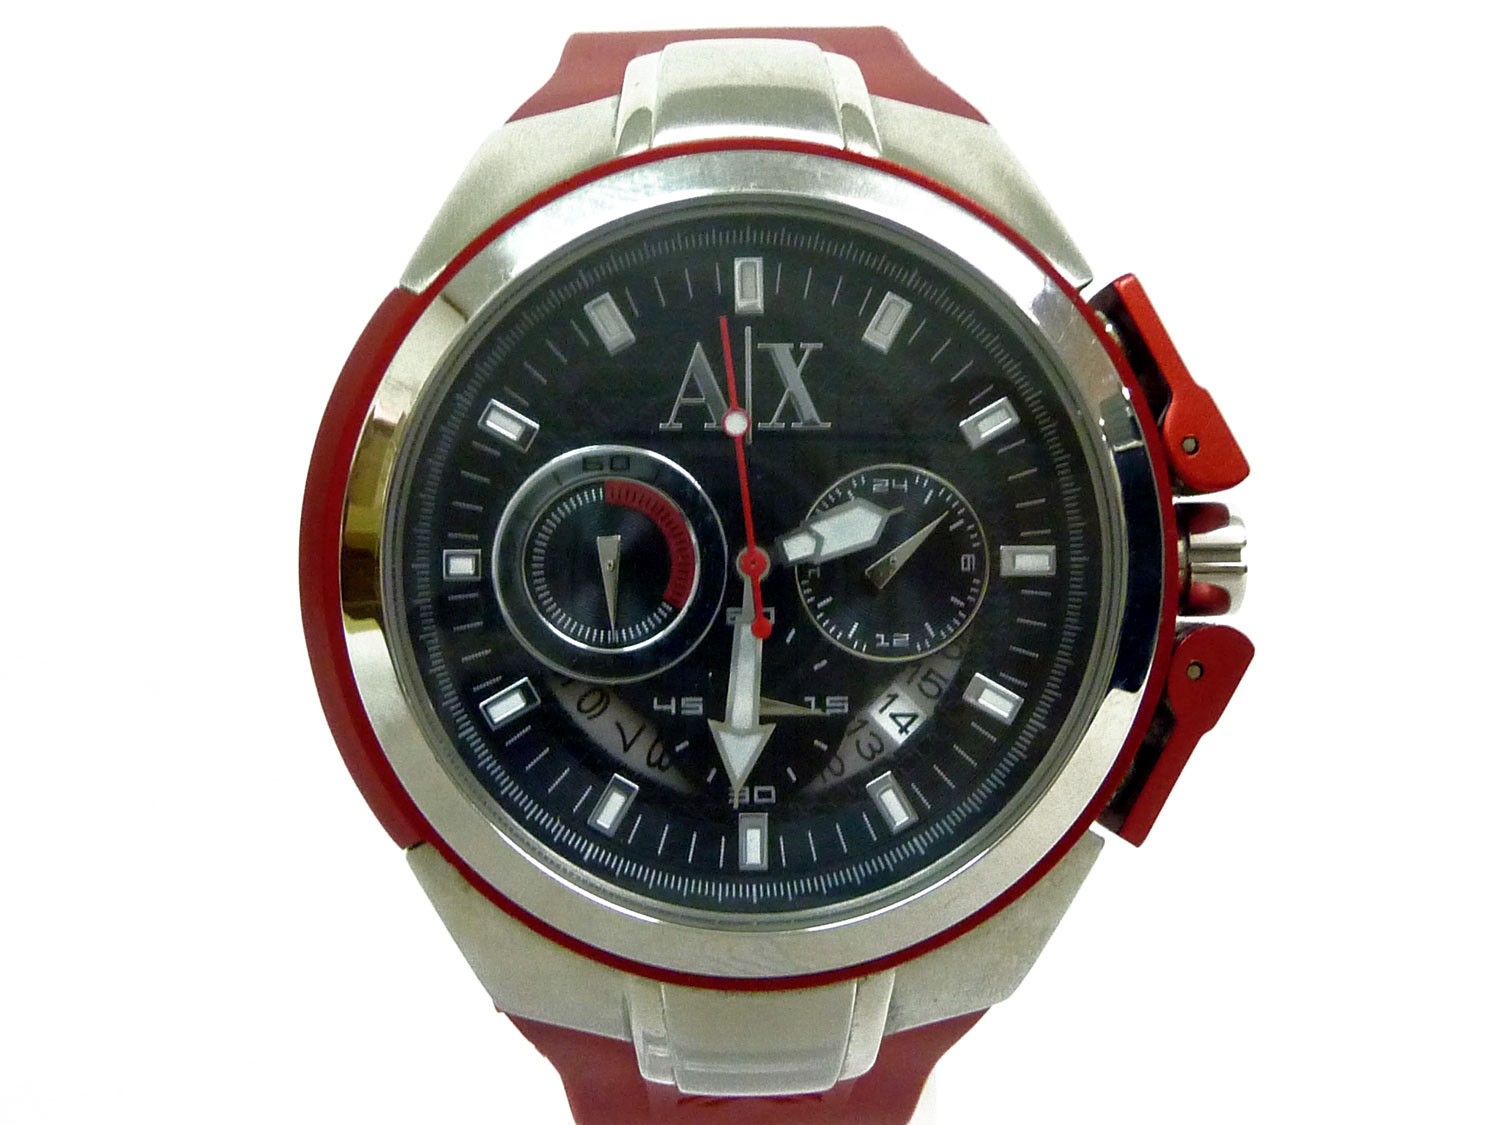 アルマーニエクスチェンジ 腕時計 メンズ AX1040 ブラック×レッド 買取 茨城県ひたちなか市 ニコニコ堂ひたちなか店 | 中古品の高価